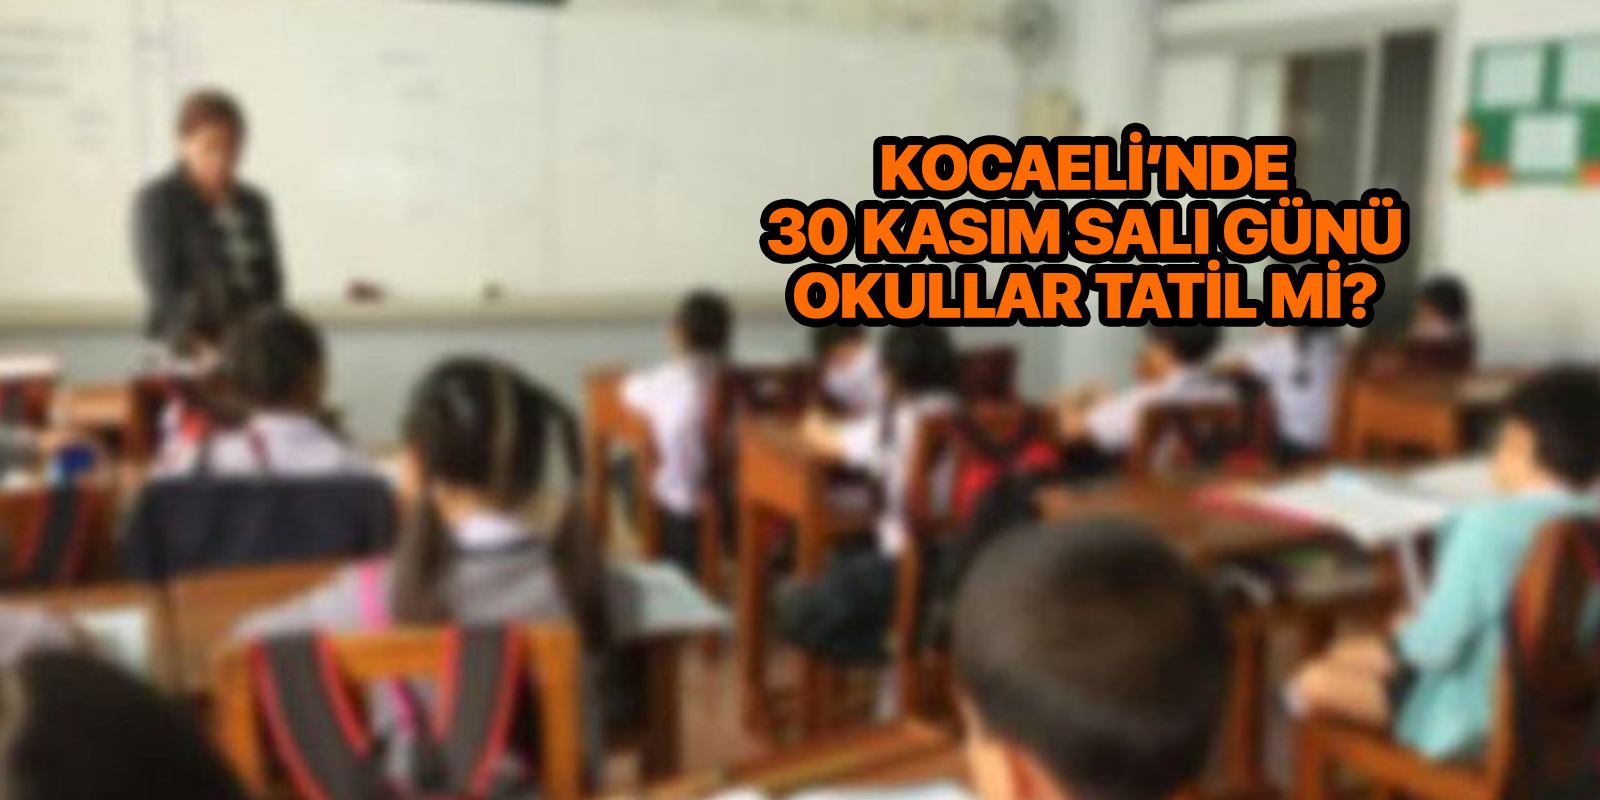 kocaeli yarin okul yok mu kocaeli okullar tatil mi 30 kasim 2021 sali